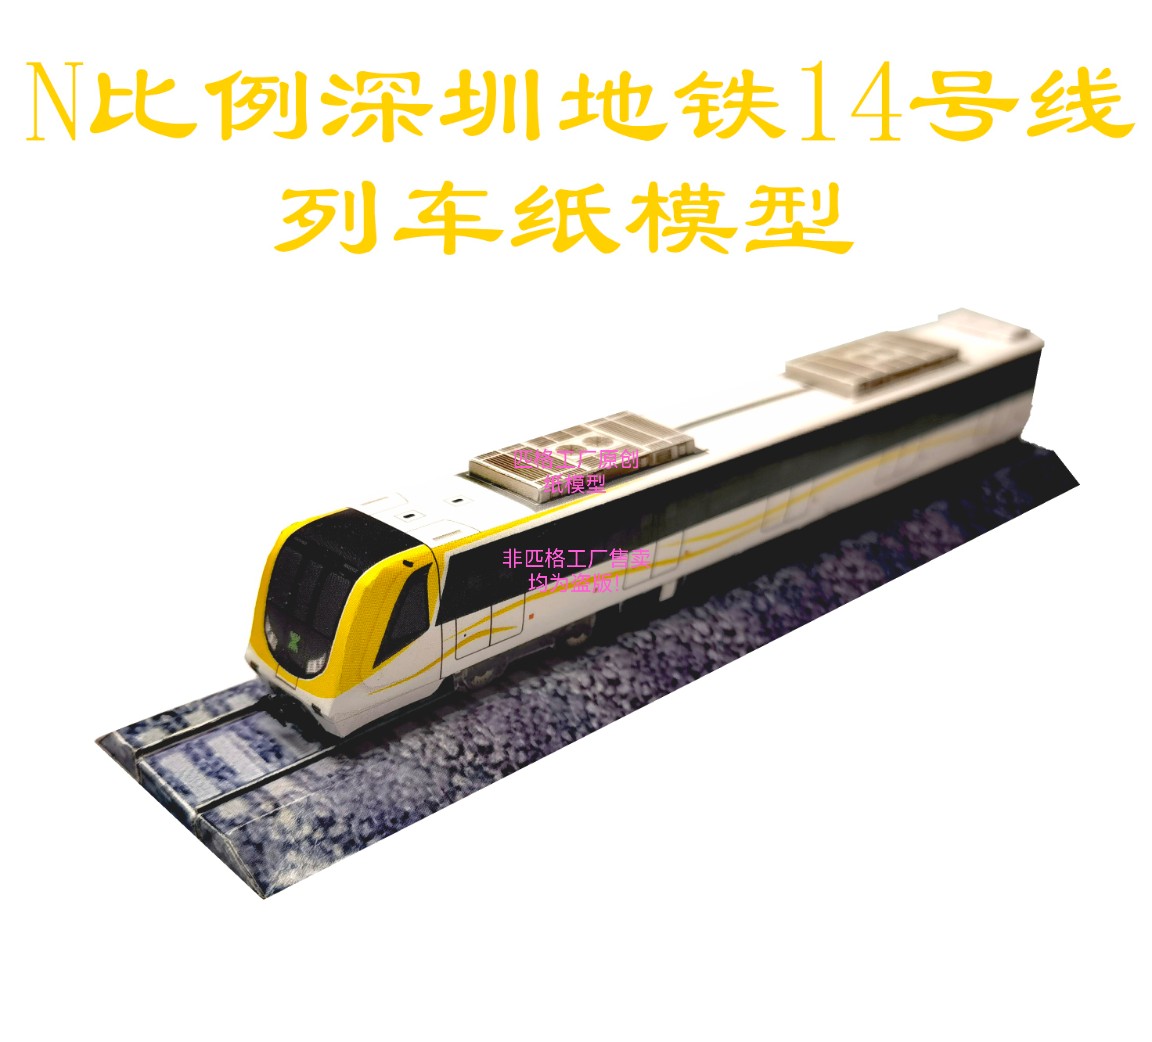 匹格N比例深圳地铁14号线地铁列车模型3D纸模DIY火车高铁地铁模型